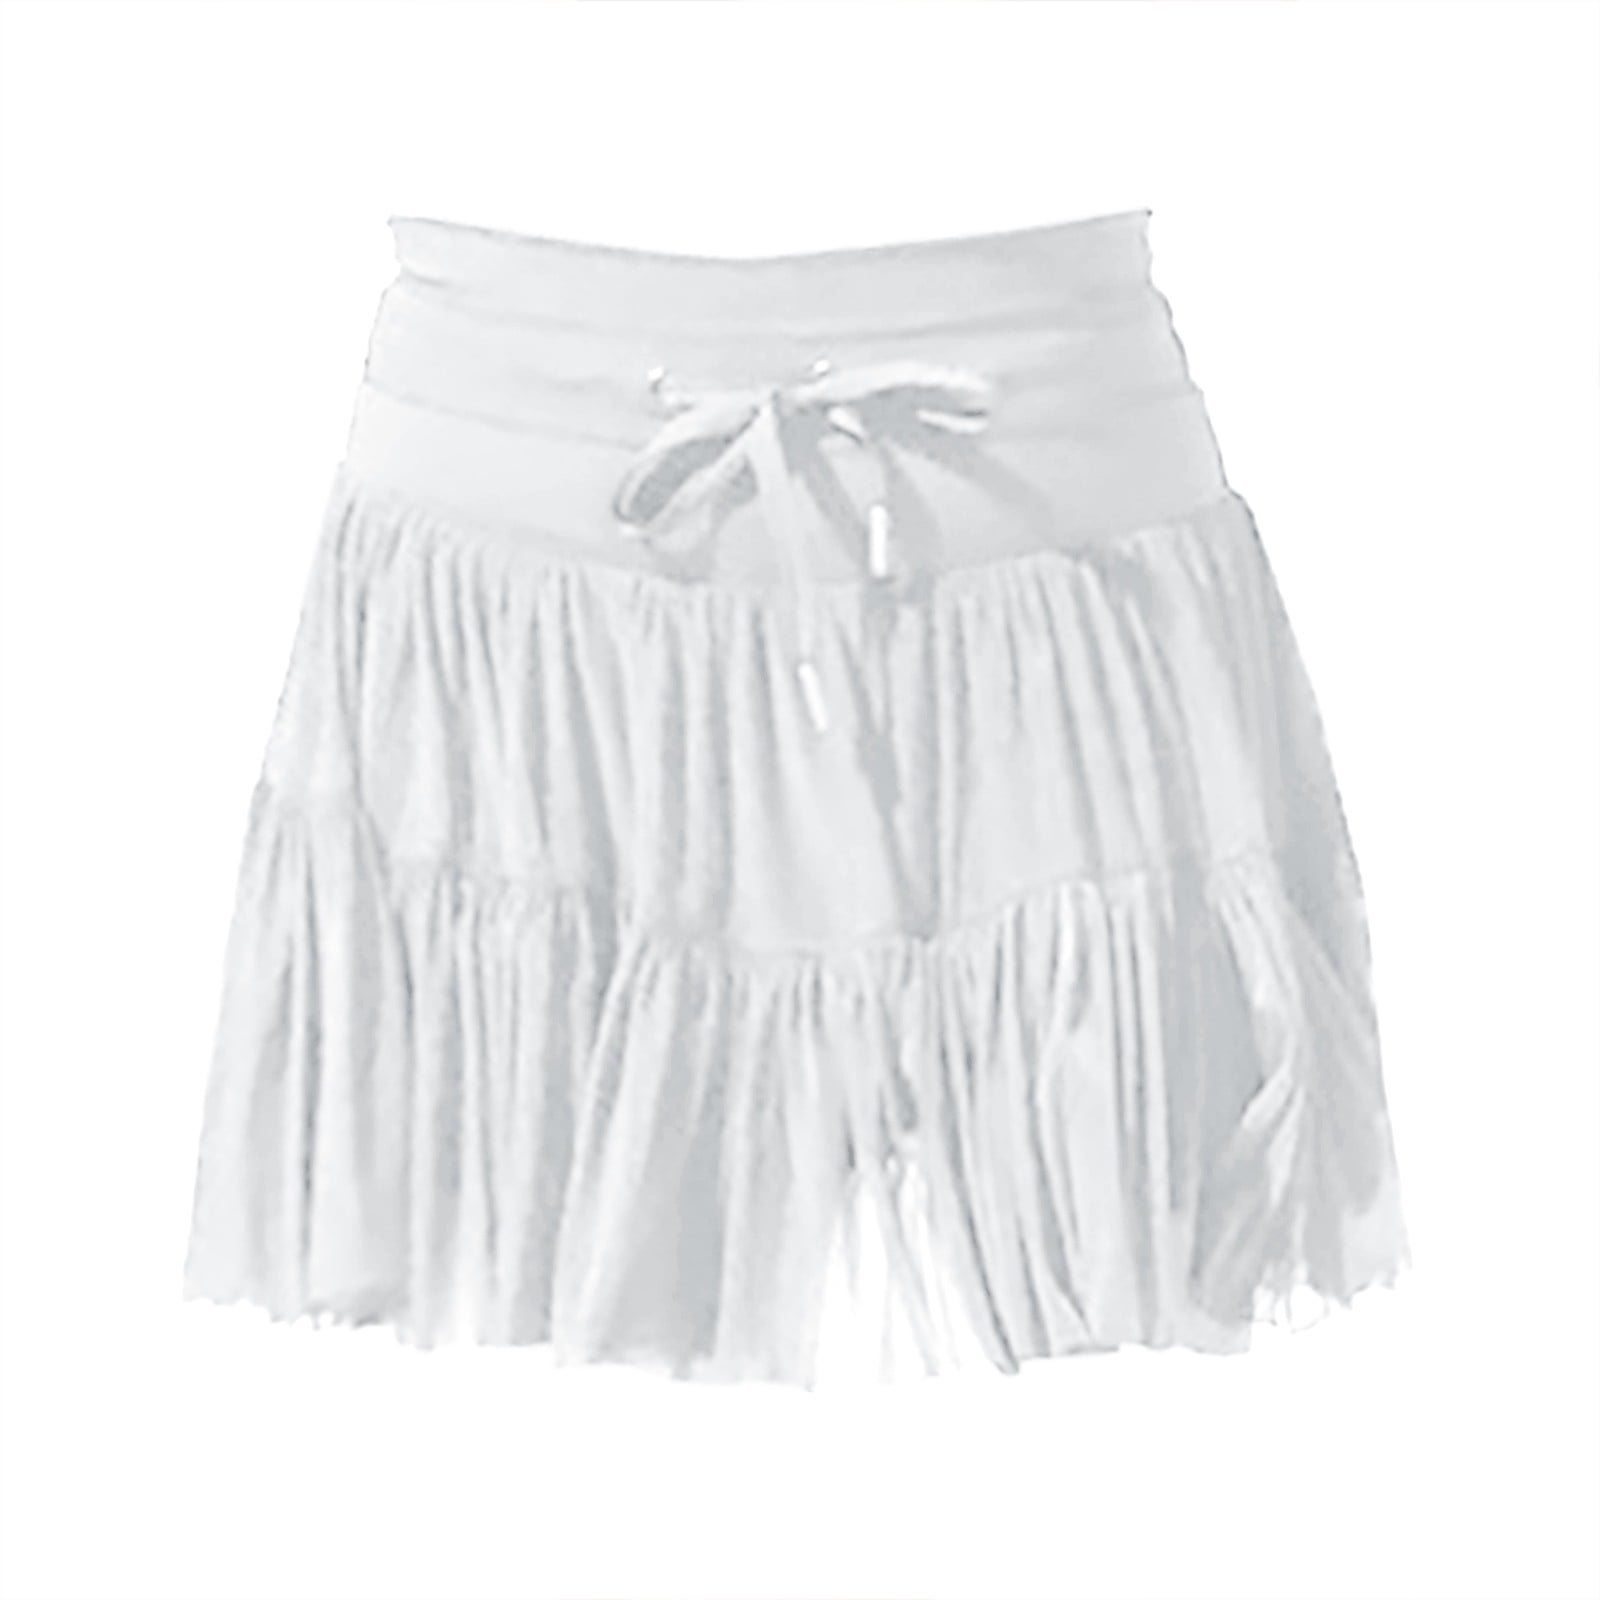 Spentoper Women's Tulle Skirt Ruffle Multilayer Mesh A Line Tier Tutu ...